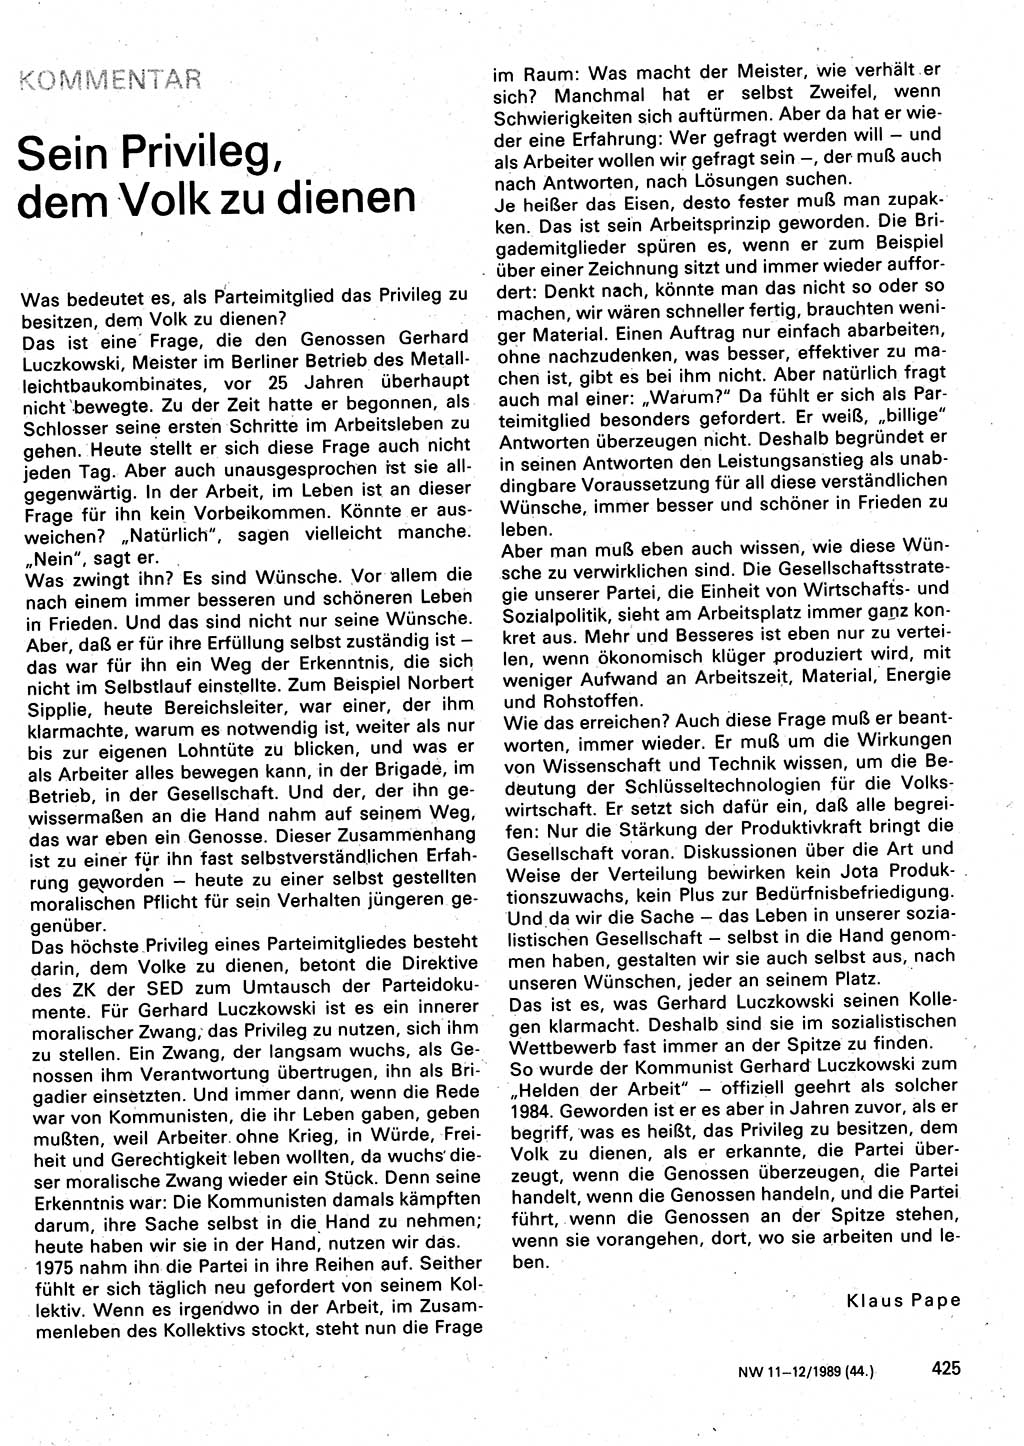 Neuer Weg (NW), Organ des Zentralkomitees (ZK) der SED (Sozialistische Einheitspartei Deutschlands) für Fragen des Parteilebens, 44. Jahrgang [Deutsche Demokratische Republik (DDR)] 1989, Seite 425 (NW ZK SED DDR 1989, S. 425)